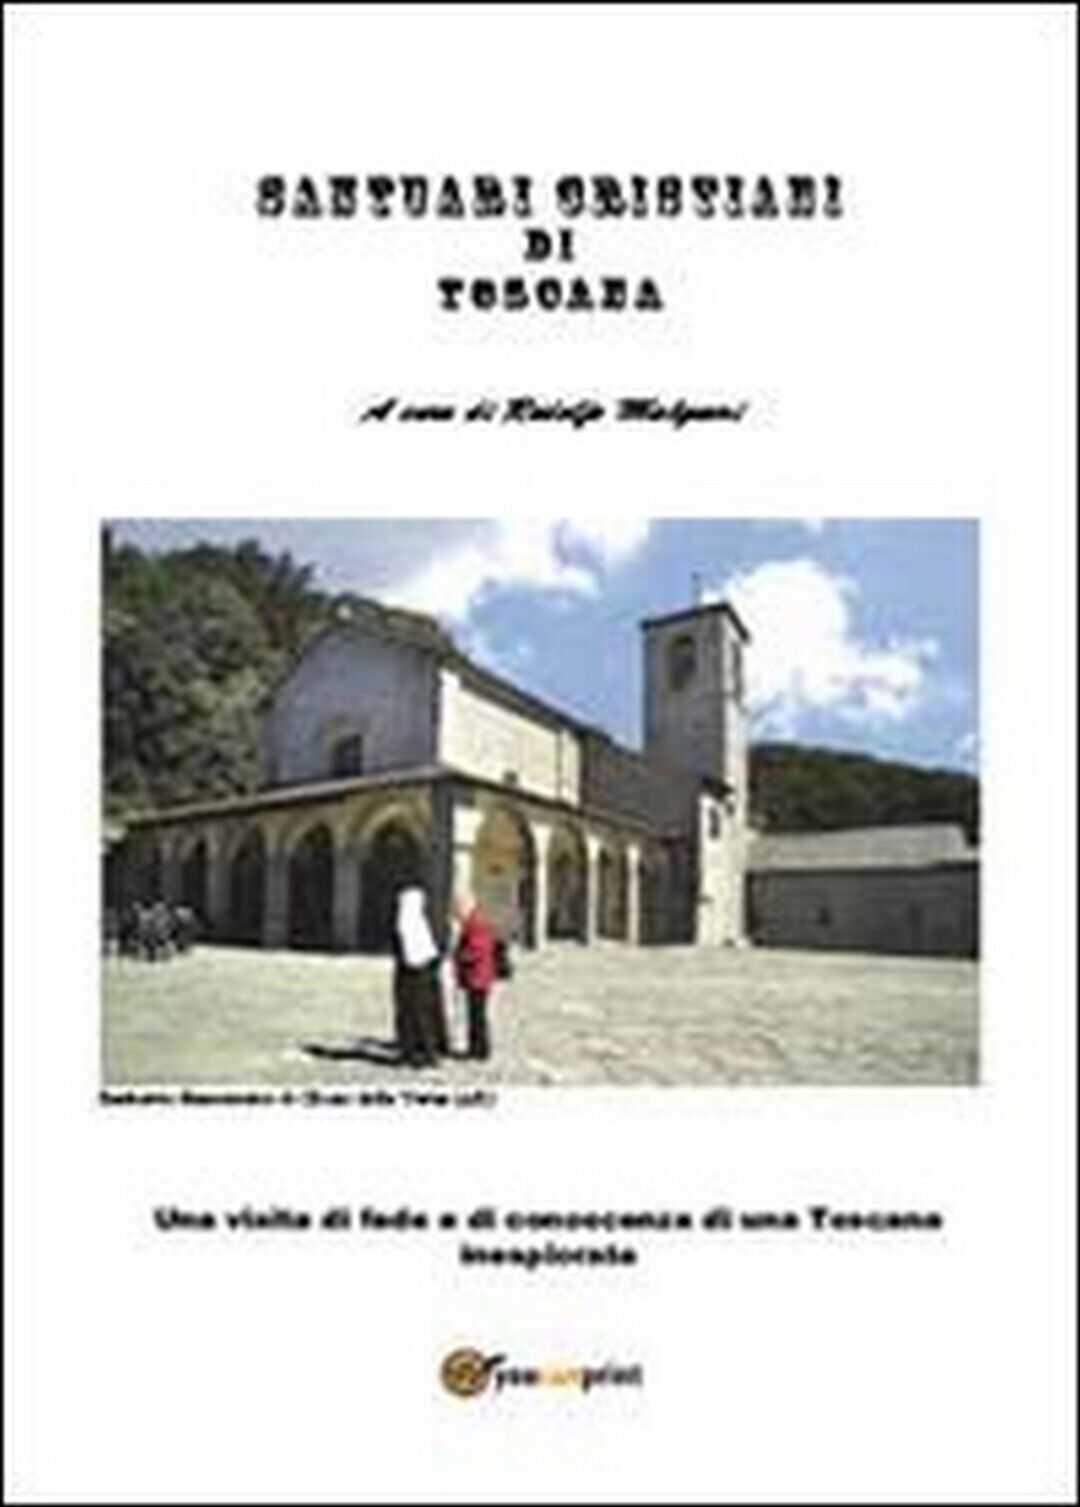 Santuari toscani  di Rodolfo Malquori,  2013,  Youcanprint libro usato